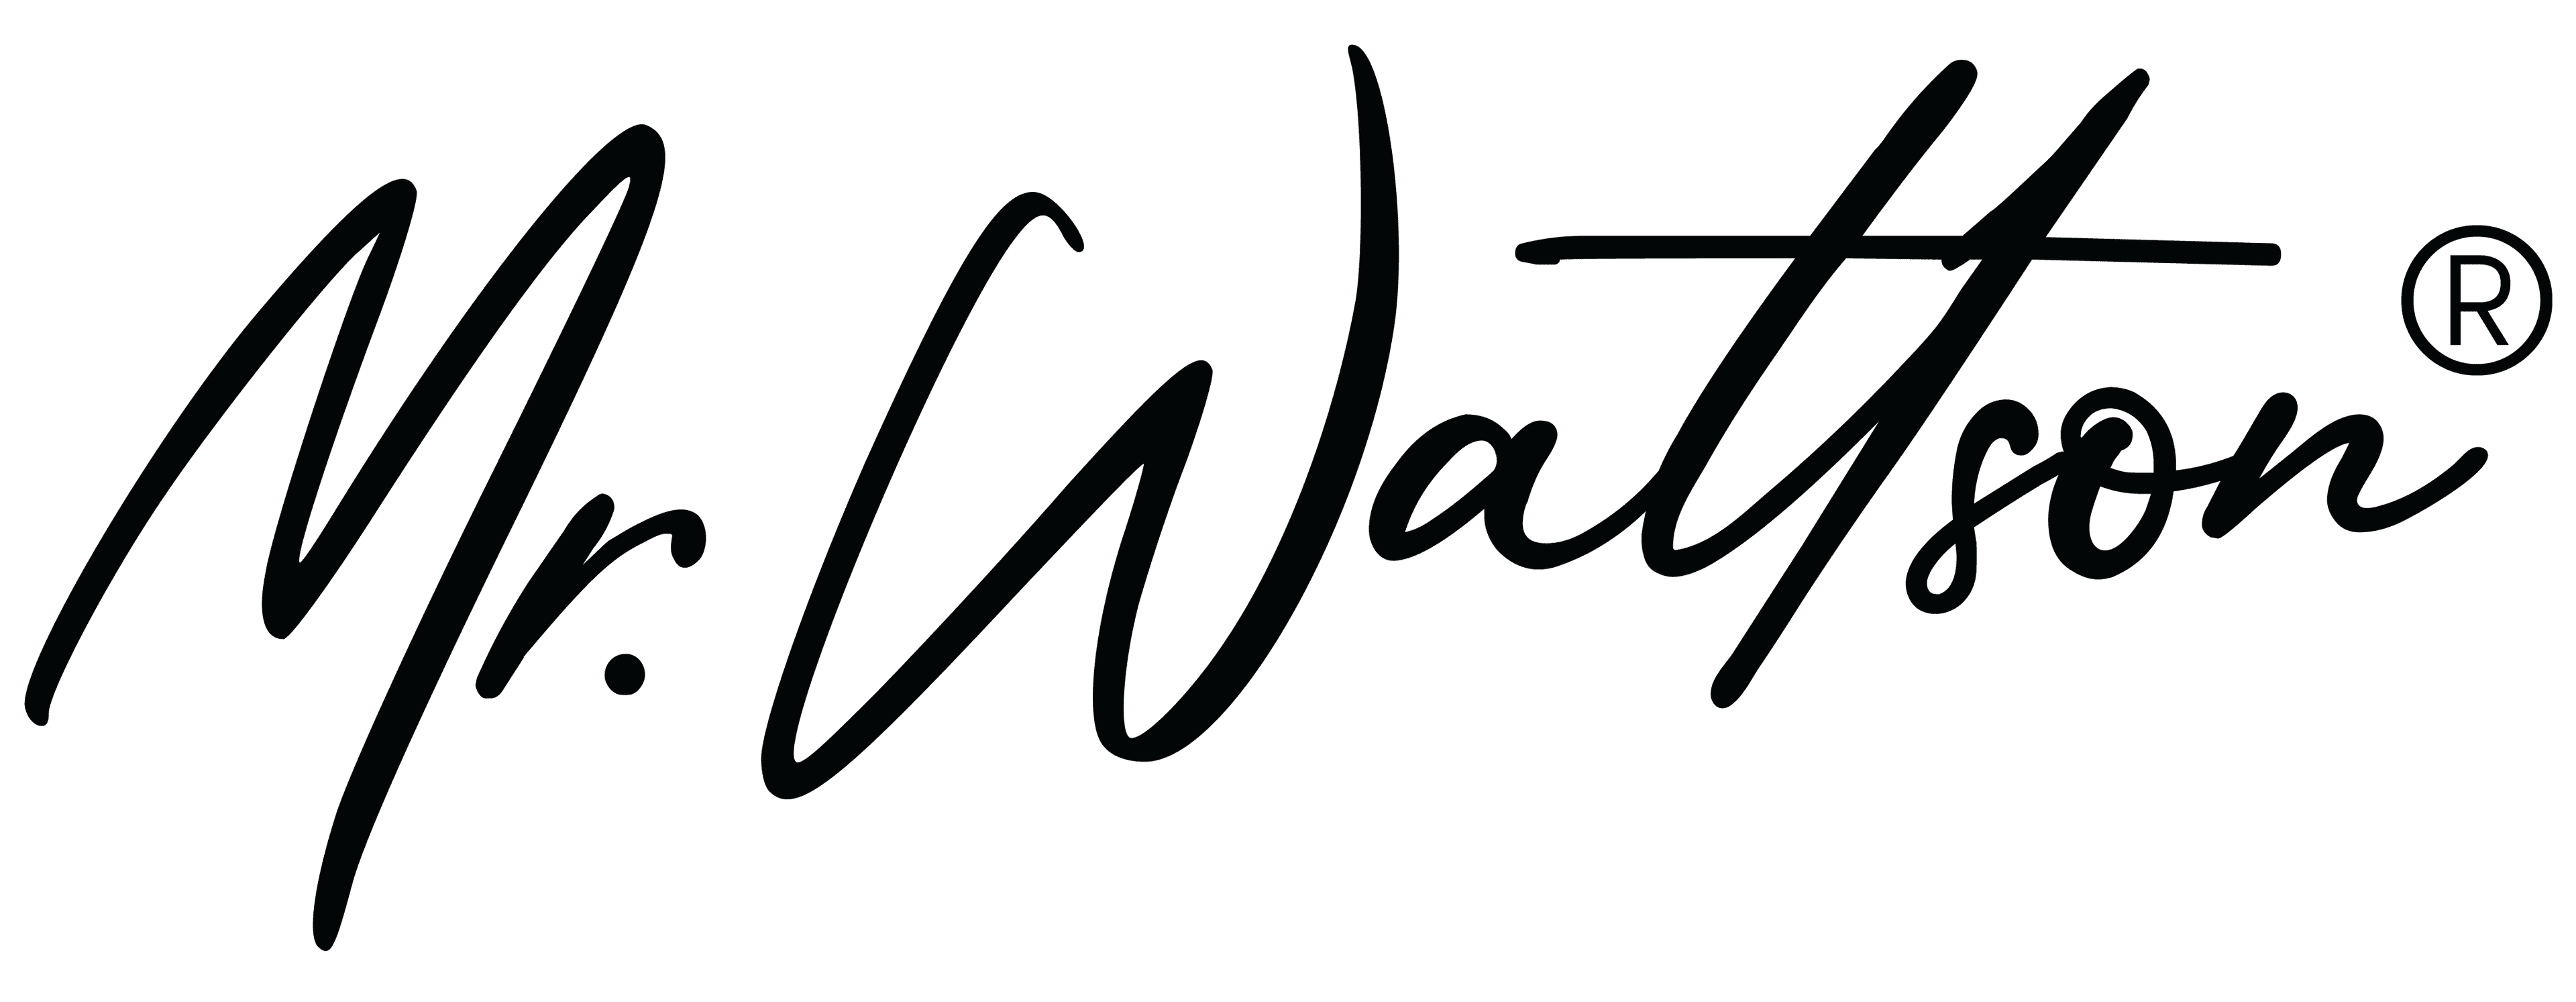 Mr. Wattson logo